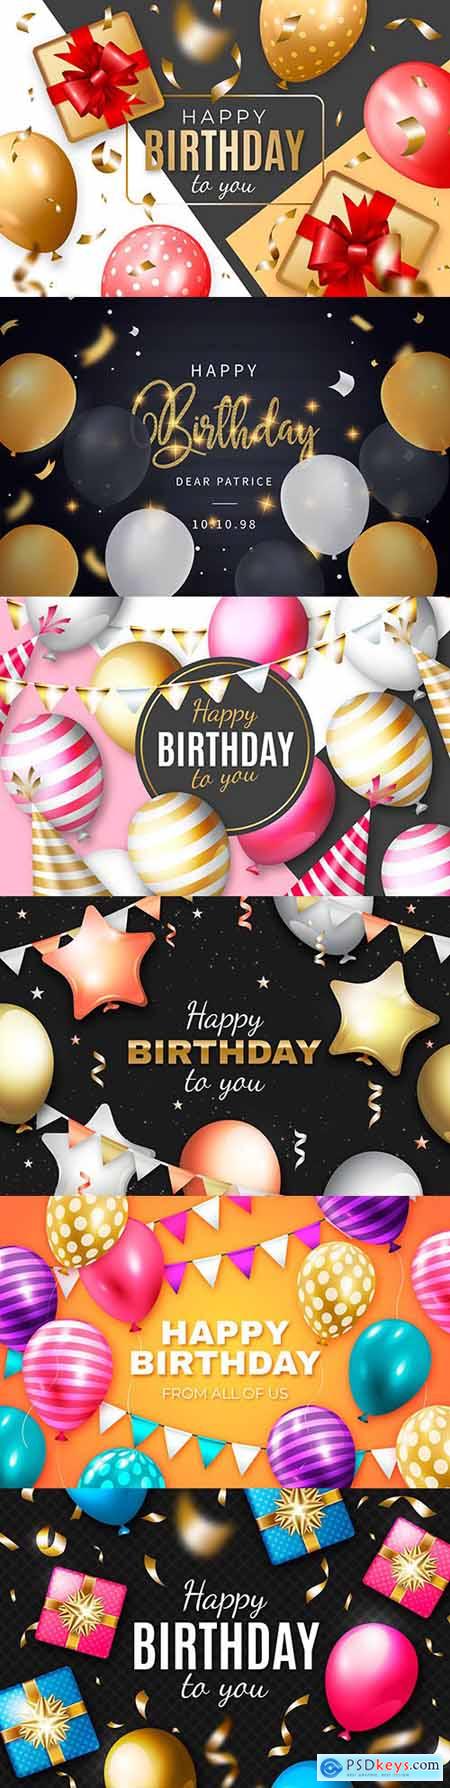 Happy birthday holiday invitation realistic balloons 14